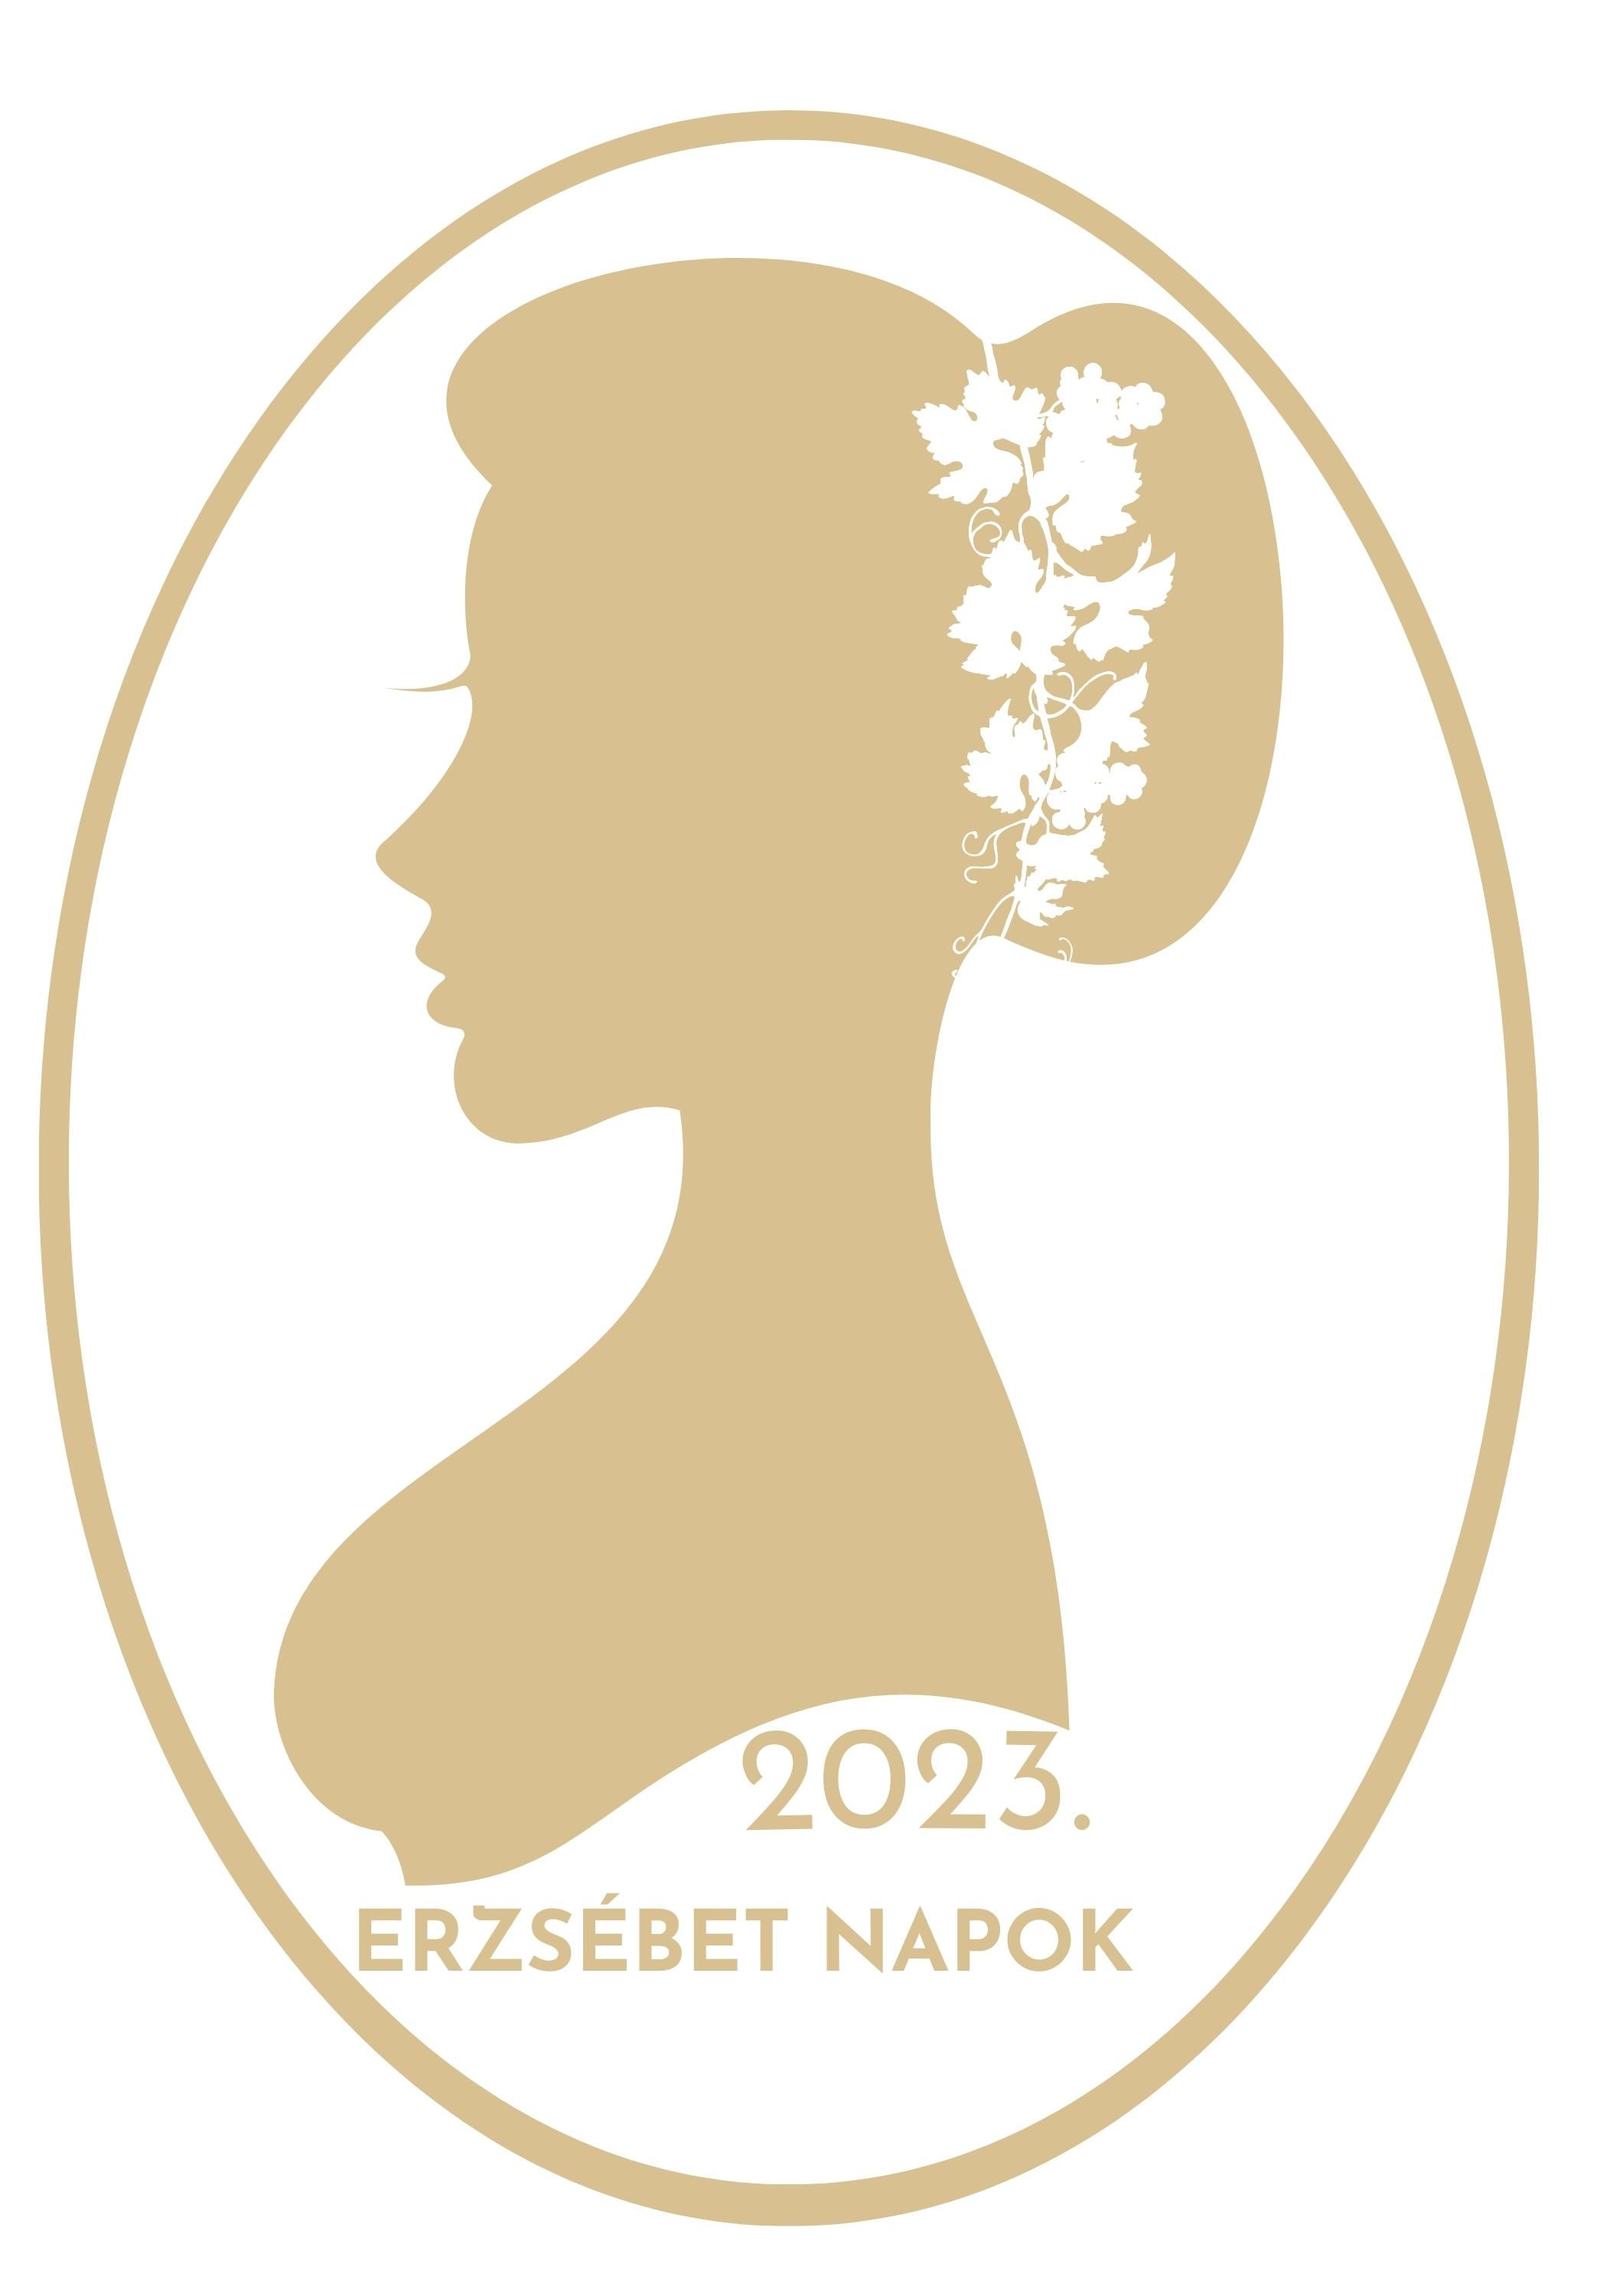 Erzsébet napok logója